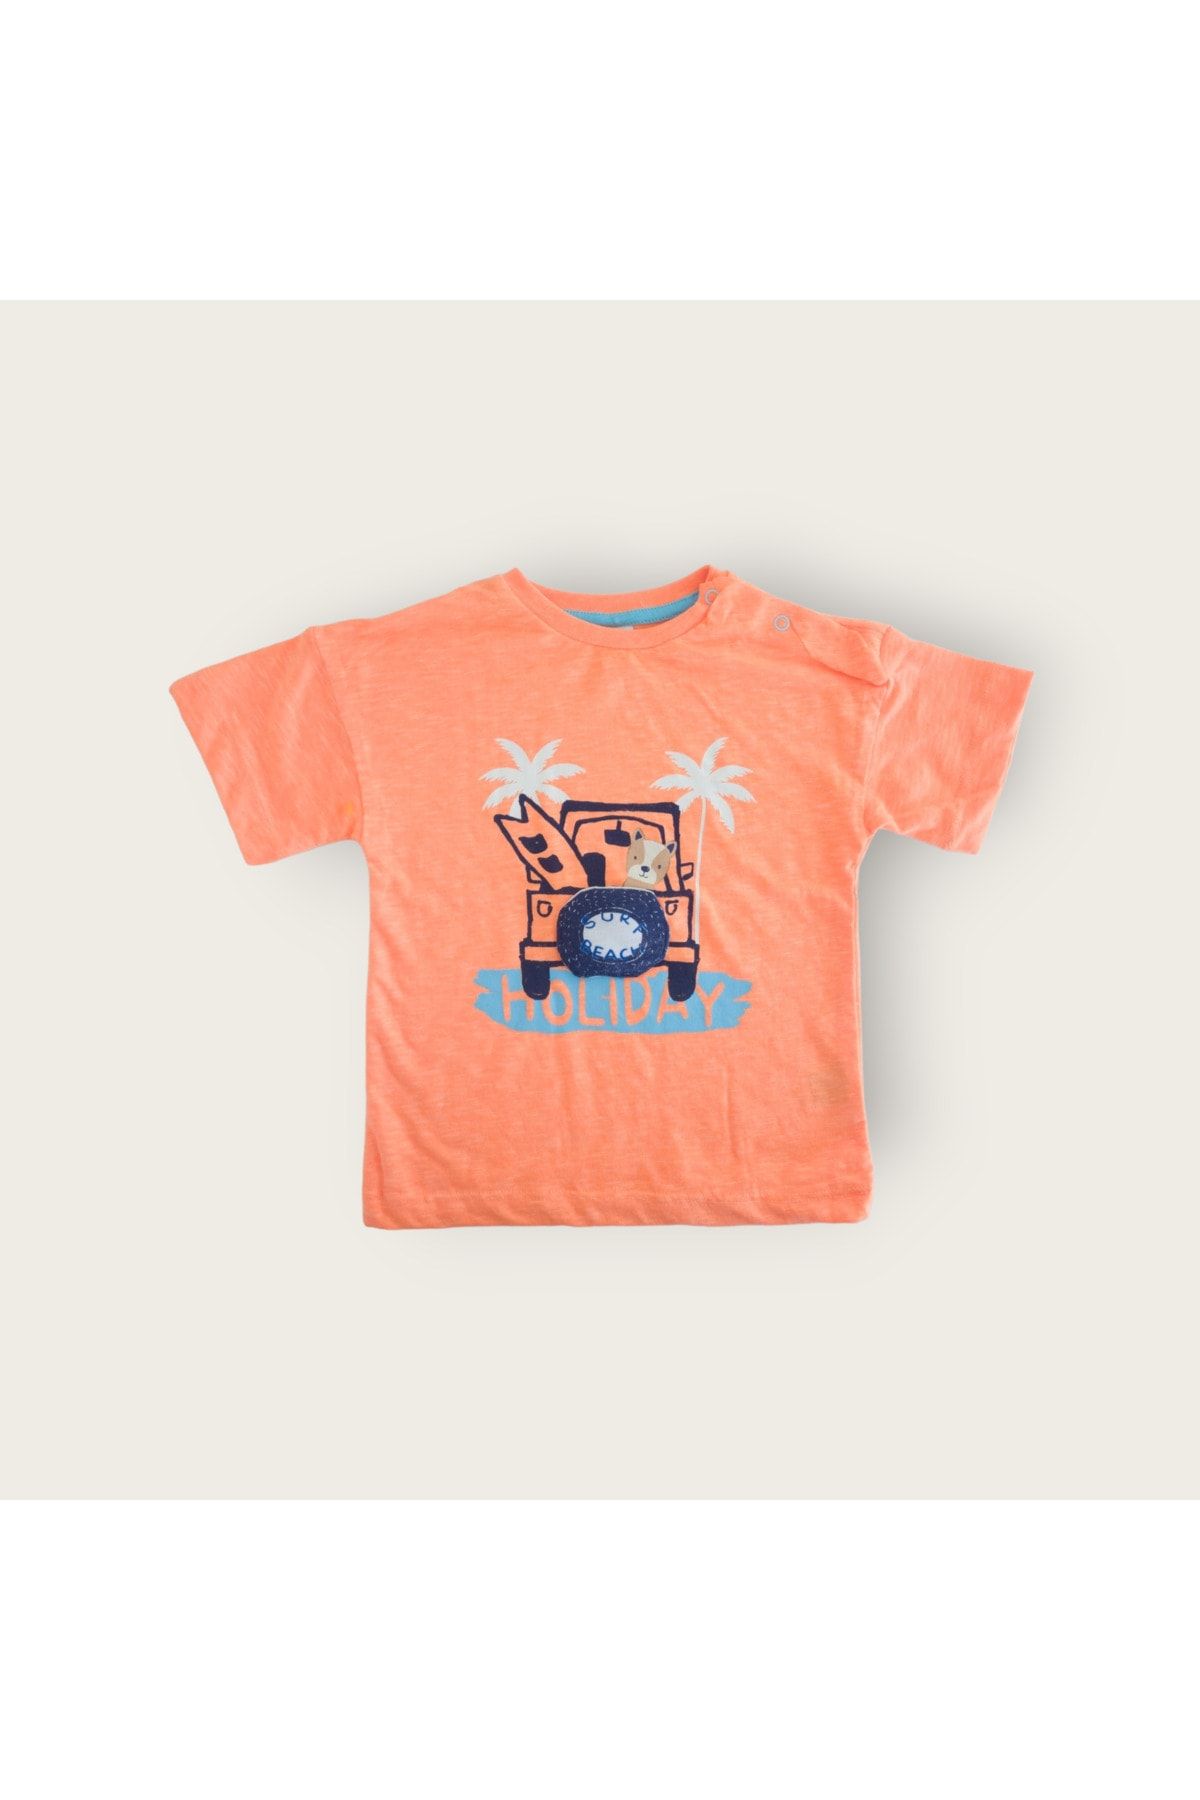 Tuffy Kids flamlı süprem kumaş erkek bebek neon oranj baskılı t-shirt